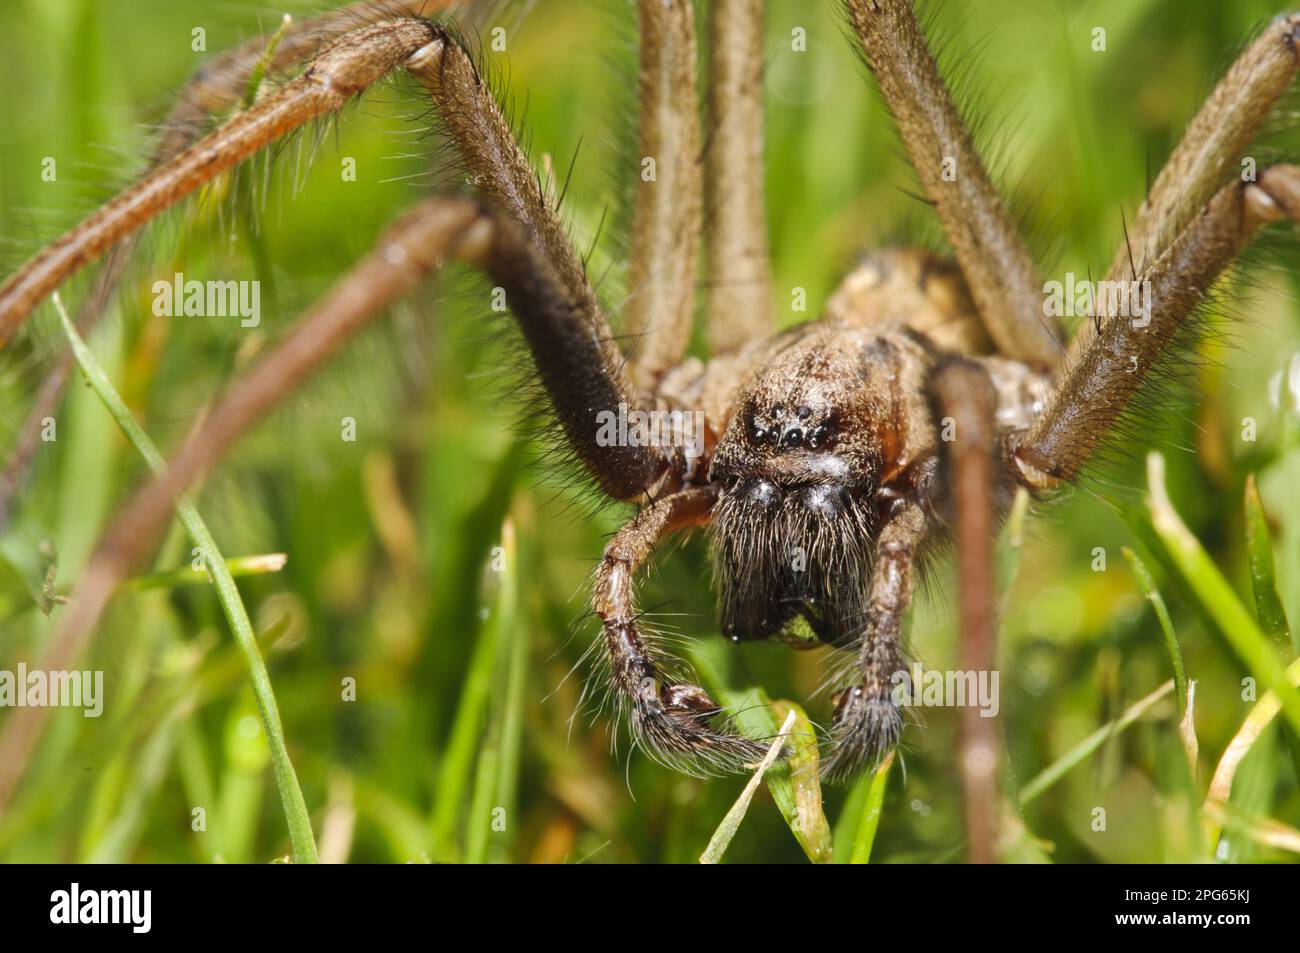 Giant House Spider (Tegenaria gigantea), männlicher Erwachsener, der über den Garten geht, nachdem er aus dem Haus geschleudert wurde, Belvedere, Bexley, Kent, England Stockfoto